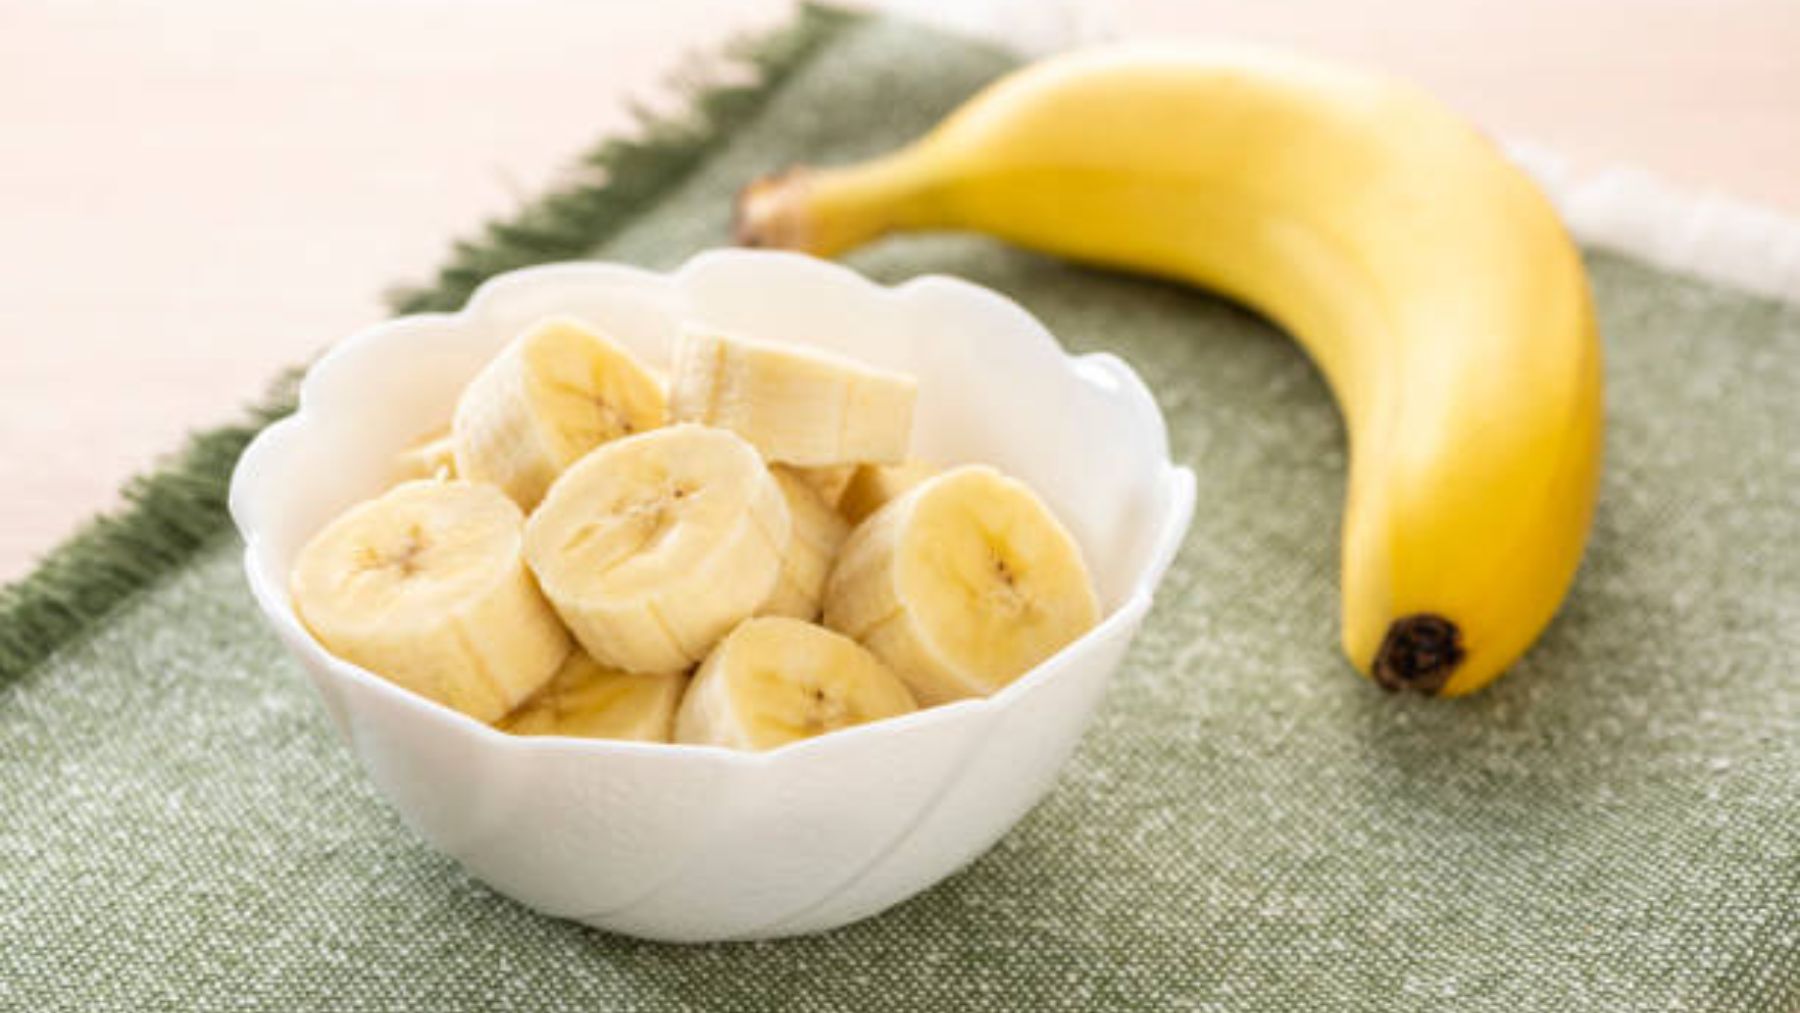 La razón científica por la que los plátanos saben dulces cuando los congelas